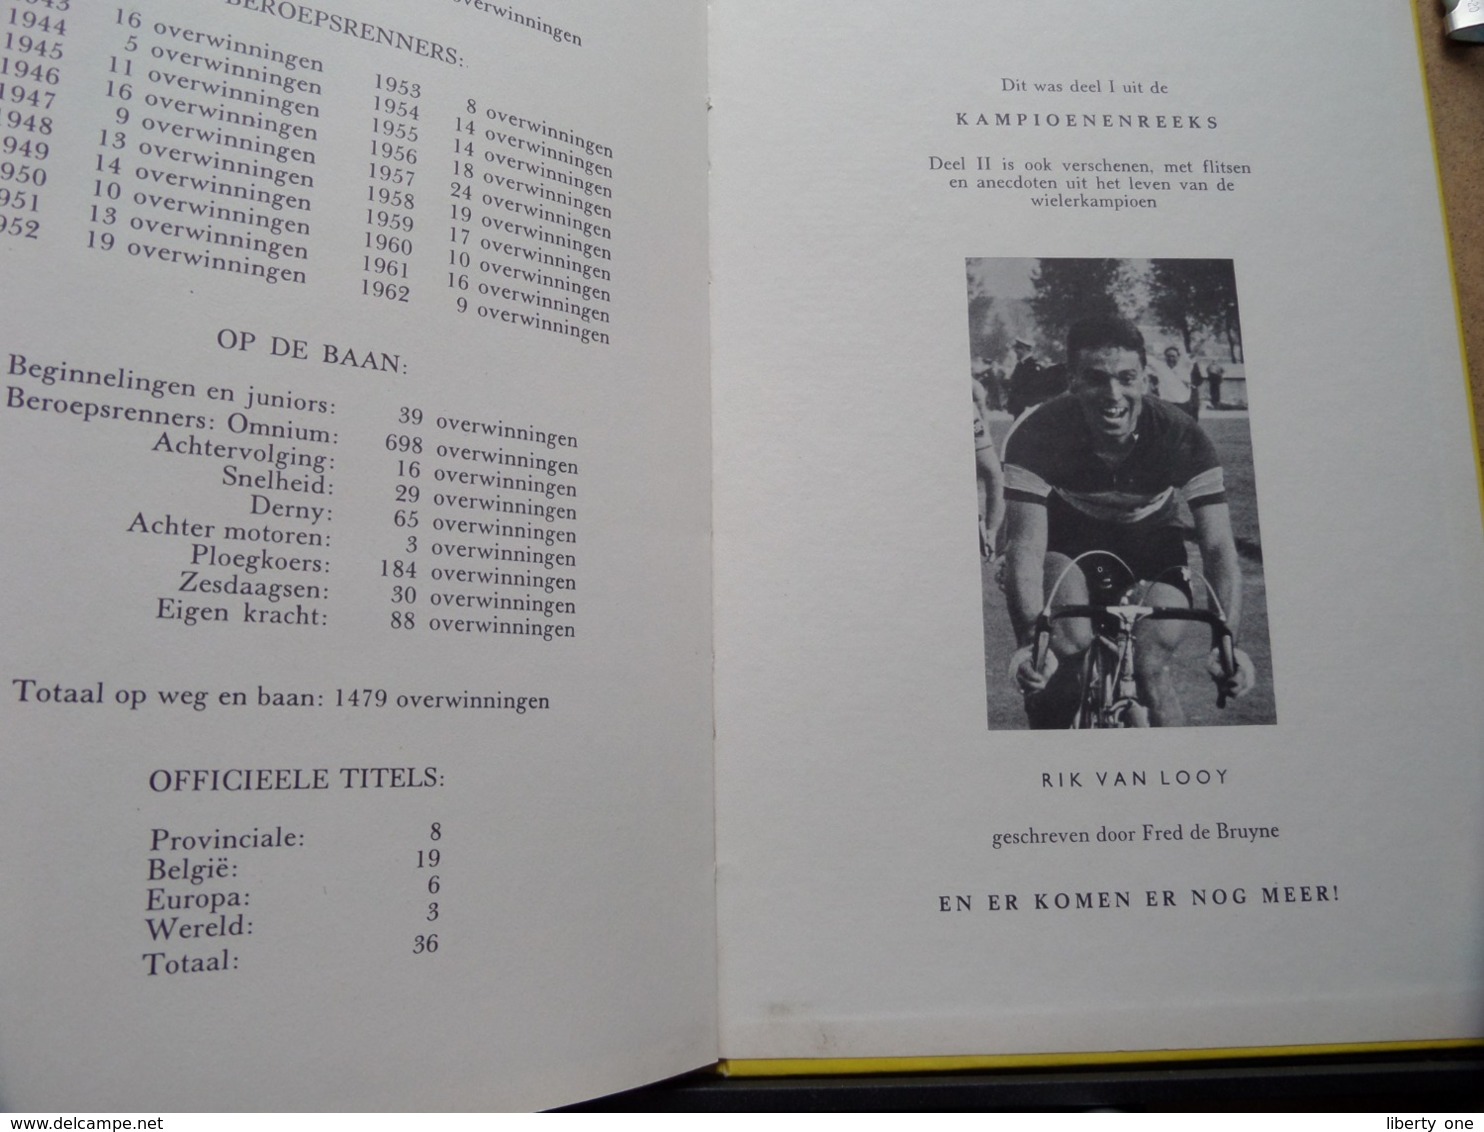 RIK Van STEENBERGEN Door Fred De Bruyne ( Uitgave G. KOLFF Mechelen ) Kampioenenreeks Deel I ! - Cyclisme